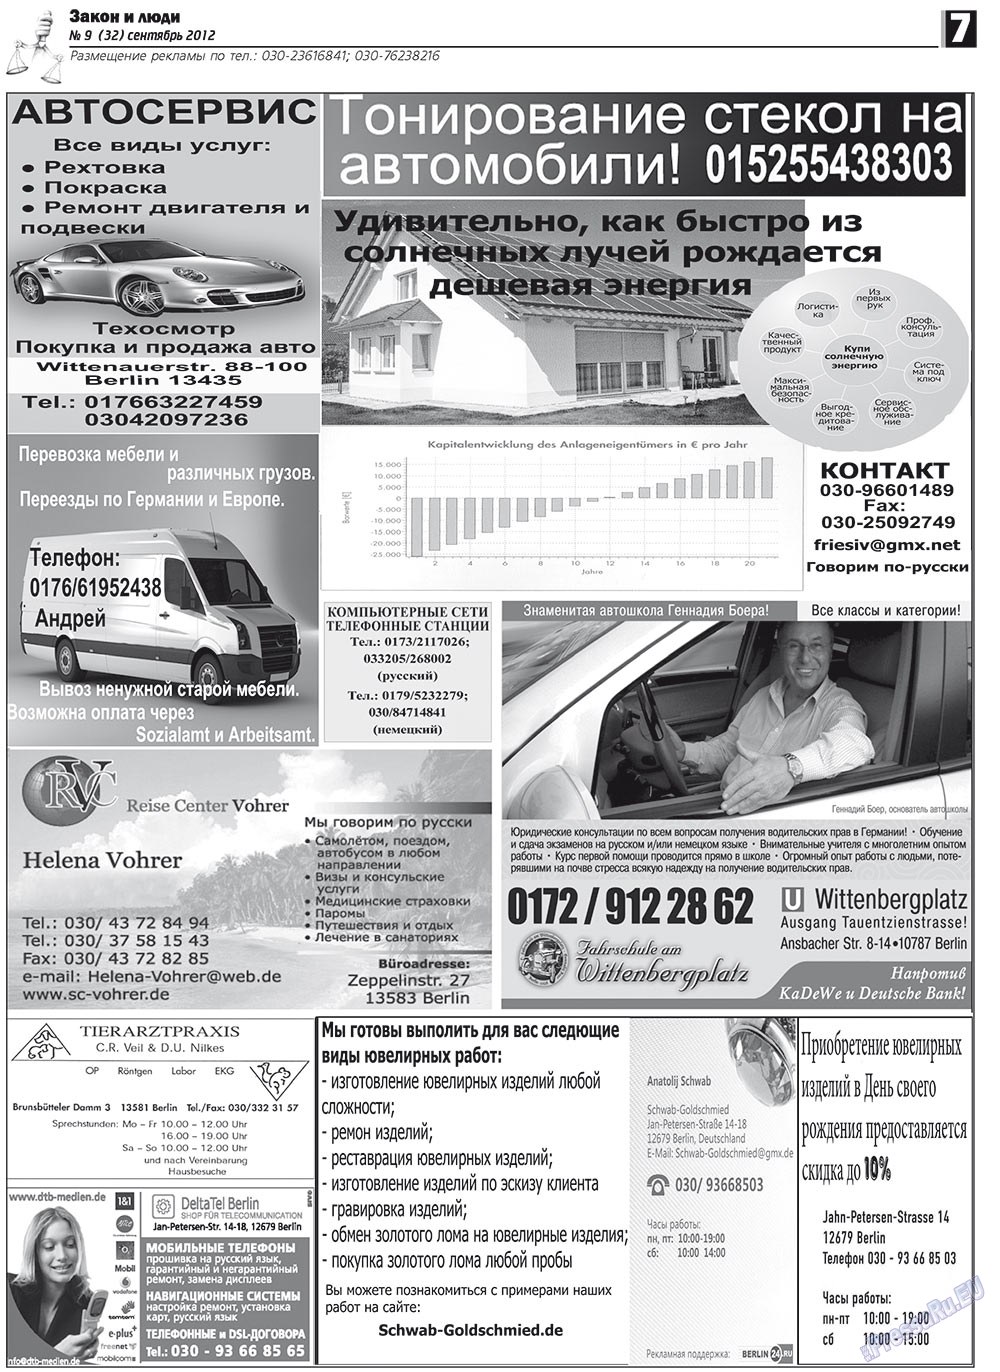 Закон и люди, газета. 2012 №9 стр.7